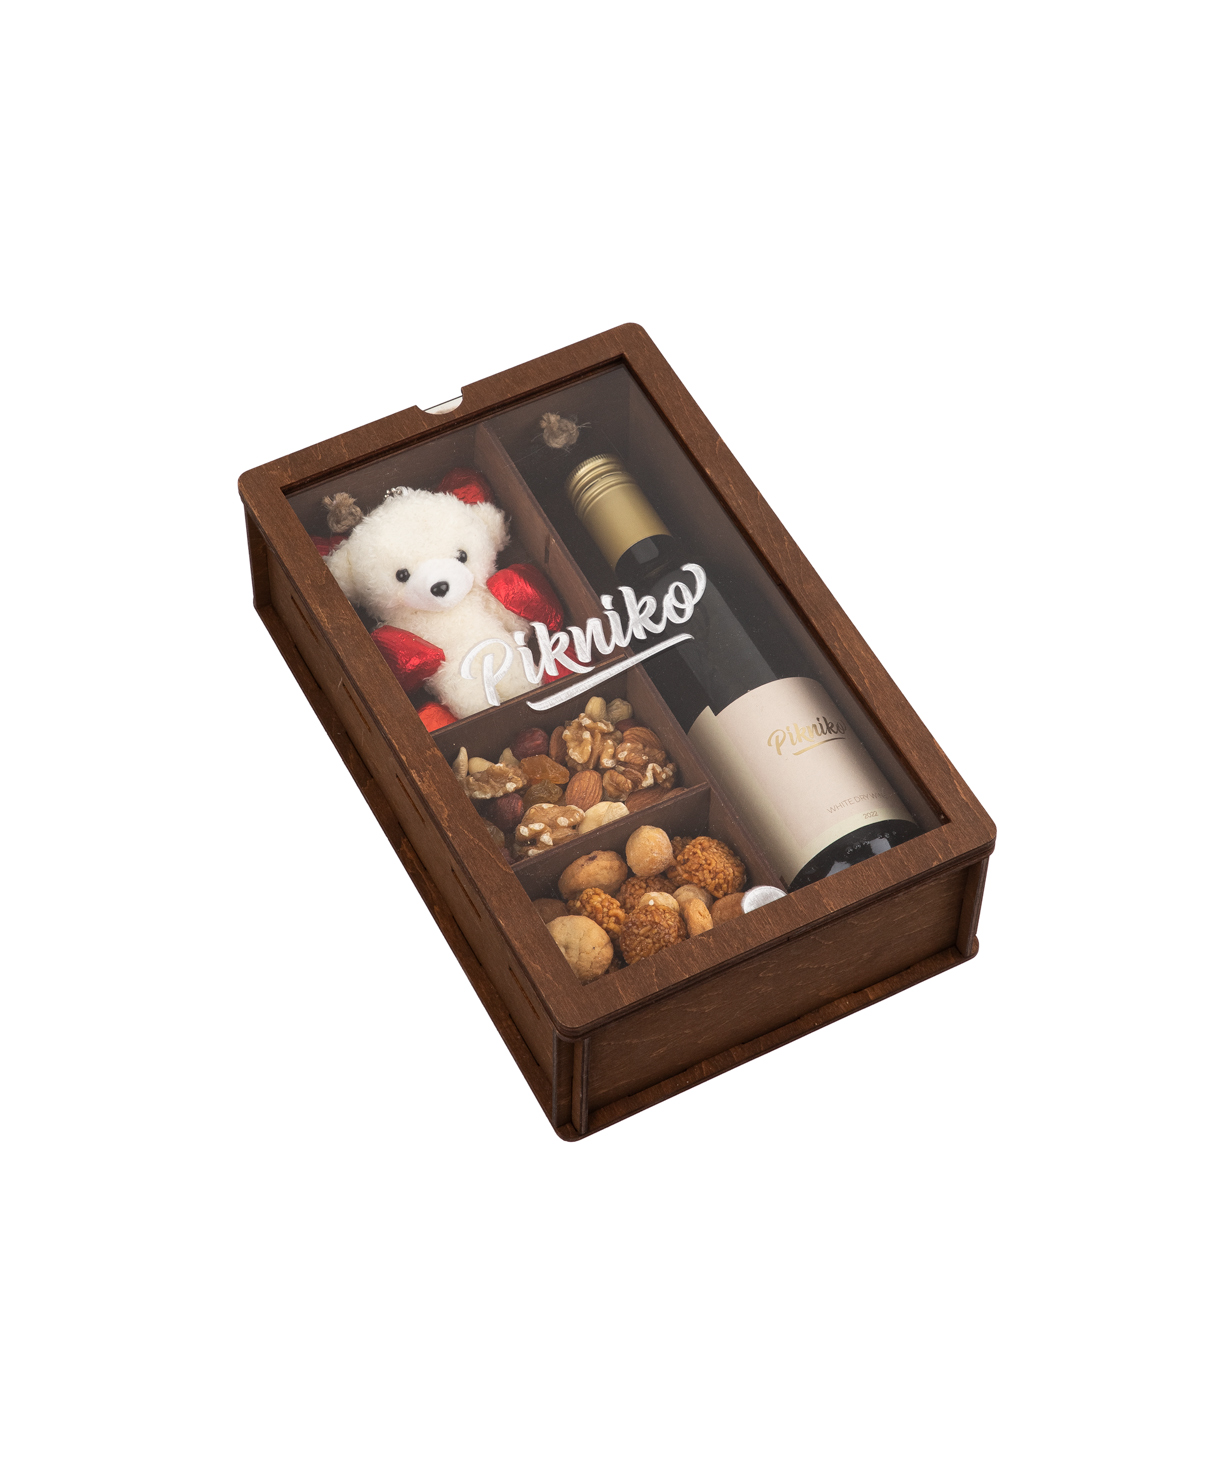 Подарочная коробка «Pikniko» с вином, сладостями и игрушкой №1